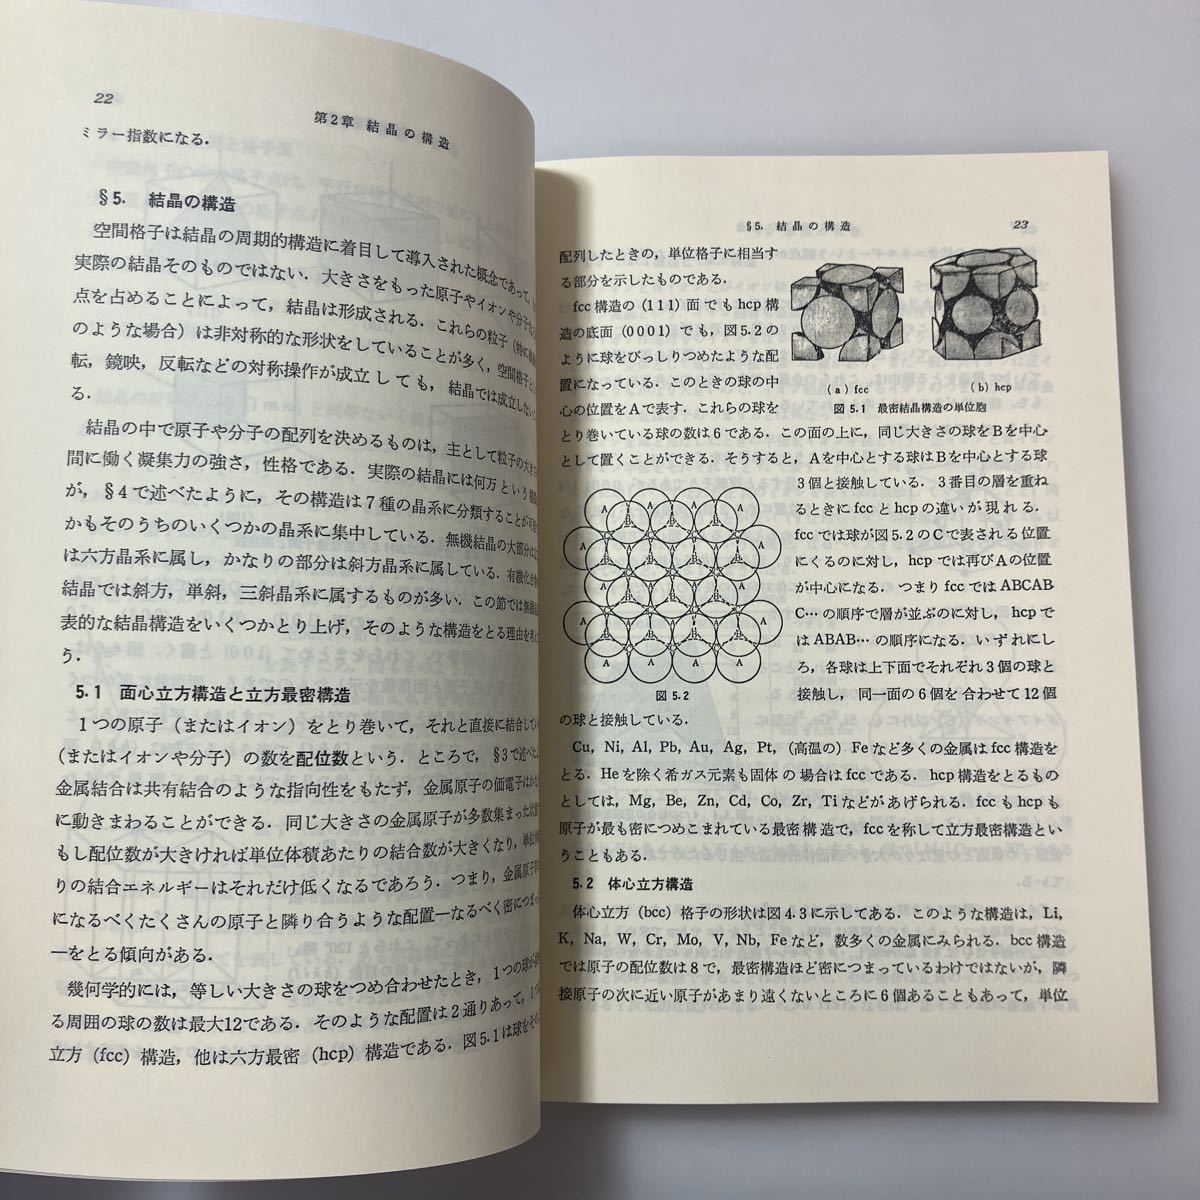 zaa-515♪基礎の物理 10 材料の物性 兵藤 申一 (著), 神谷 武志 (著) 朝倉書店 (1982/10/1)